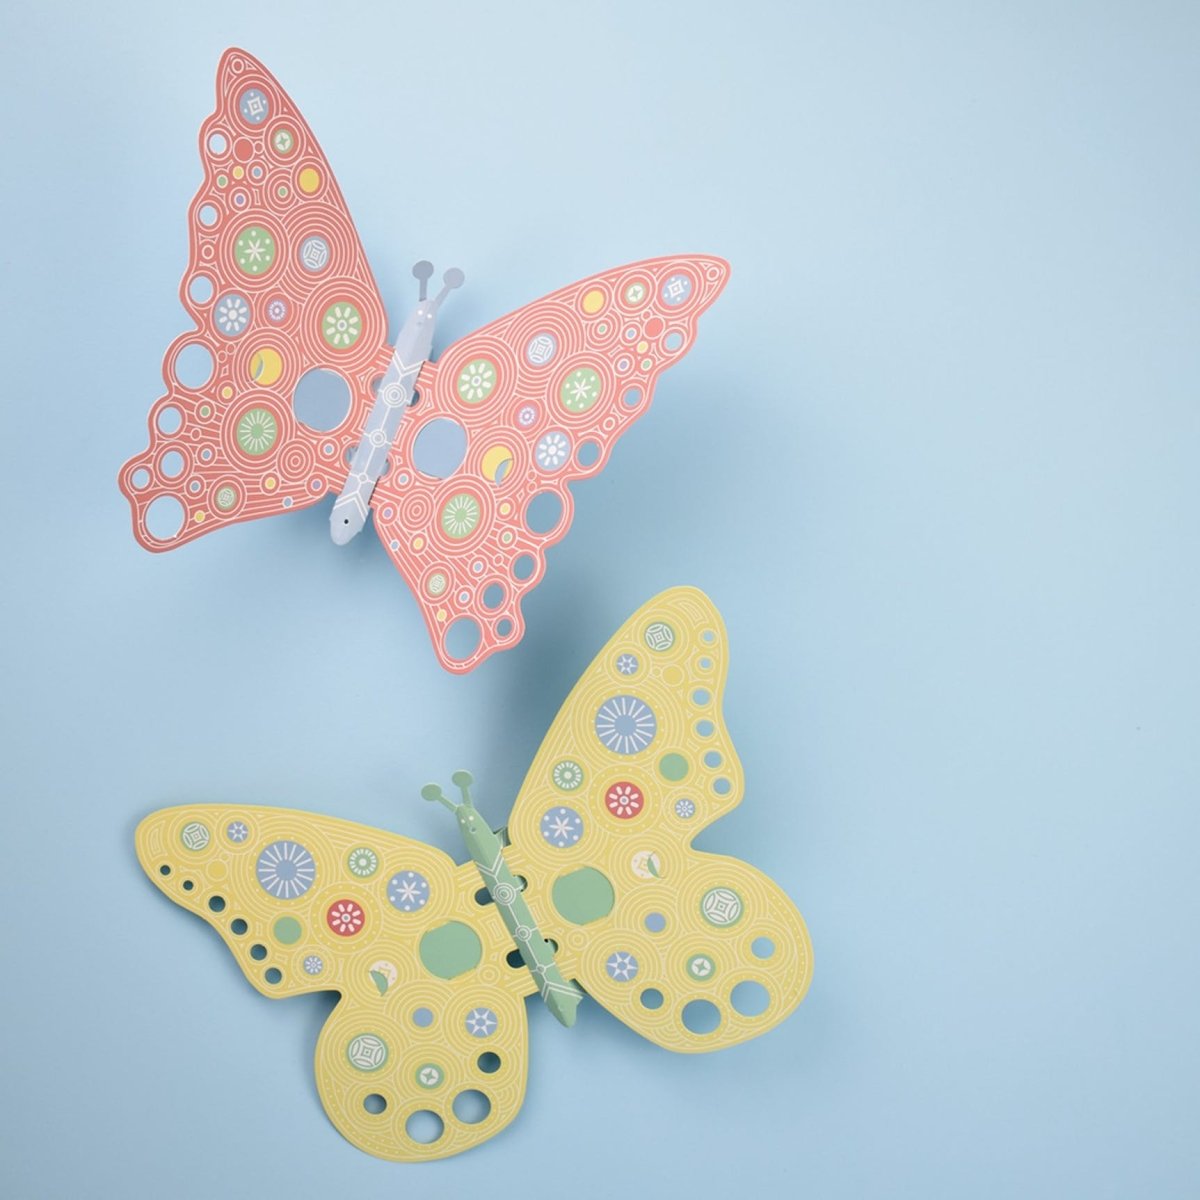 Alas de mariposa hechas con cartón